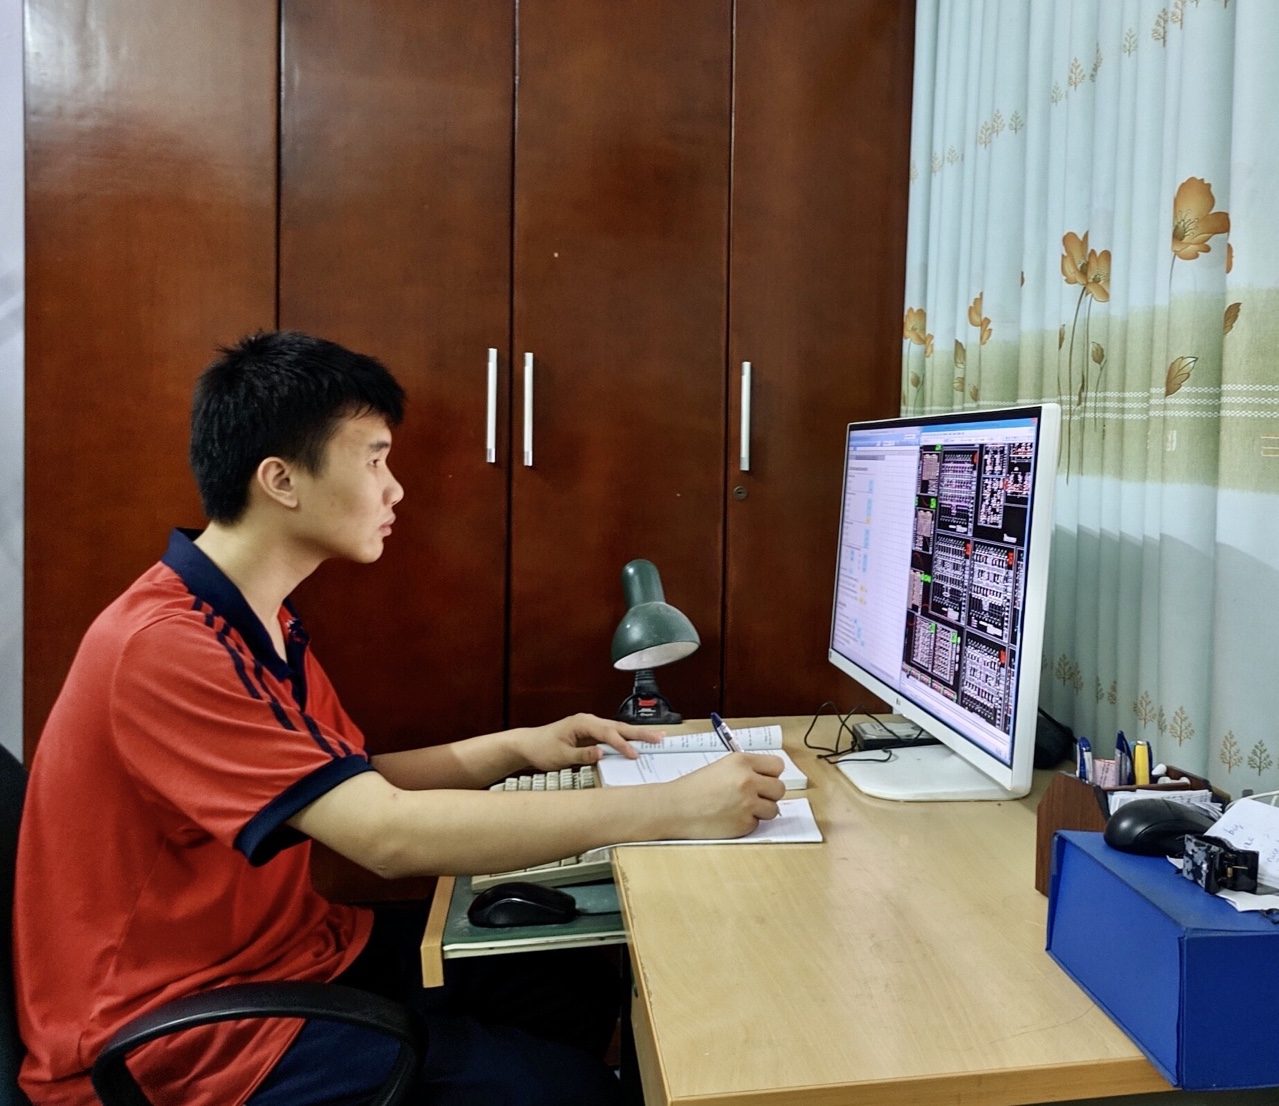 Đoàn Thanh Tùng, đồng tác giả đề tài thiết bị hỗ trợ người khiếm thị đam mê nghiên cứu lập trình phần mềm trên máy tính.